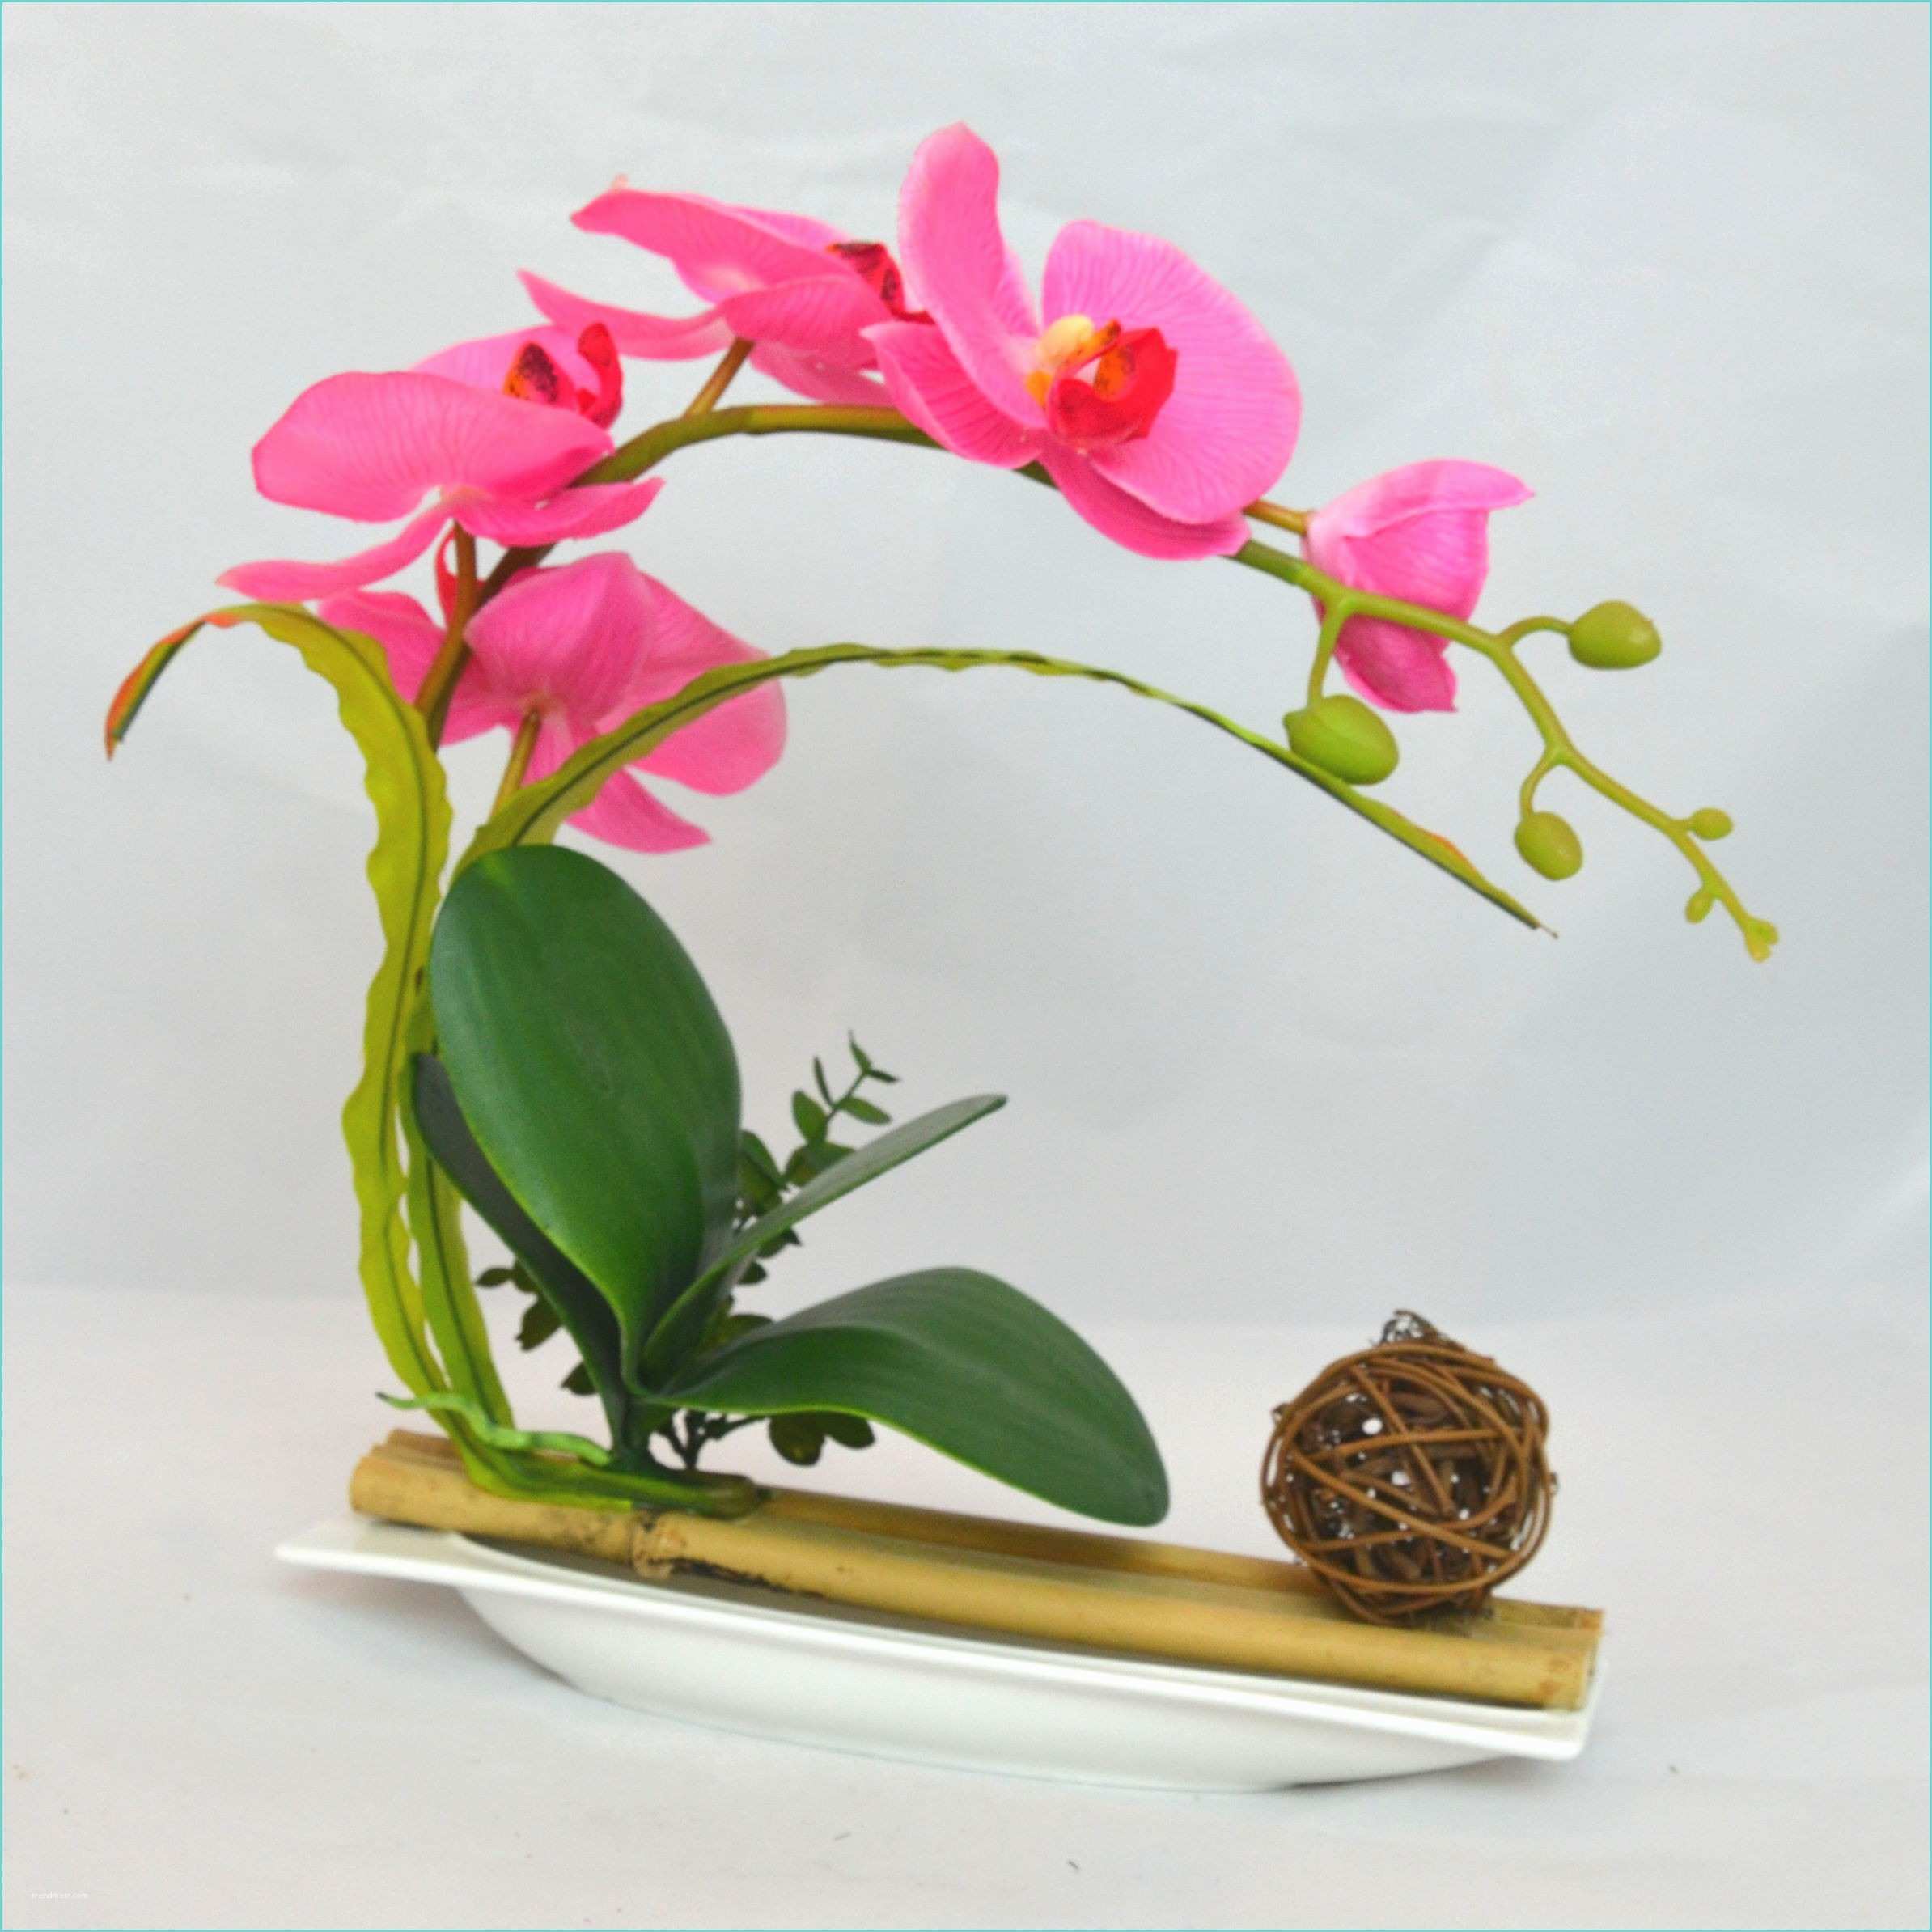 Orchide Artificielle Ikea Bambou Interieur Perfect Fontaine Duintrieur En Bambou Me